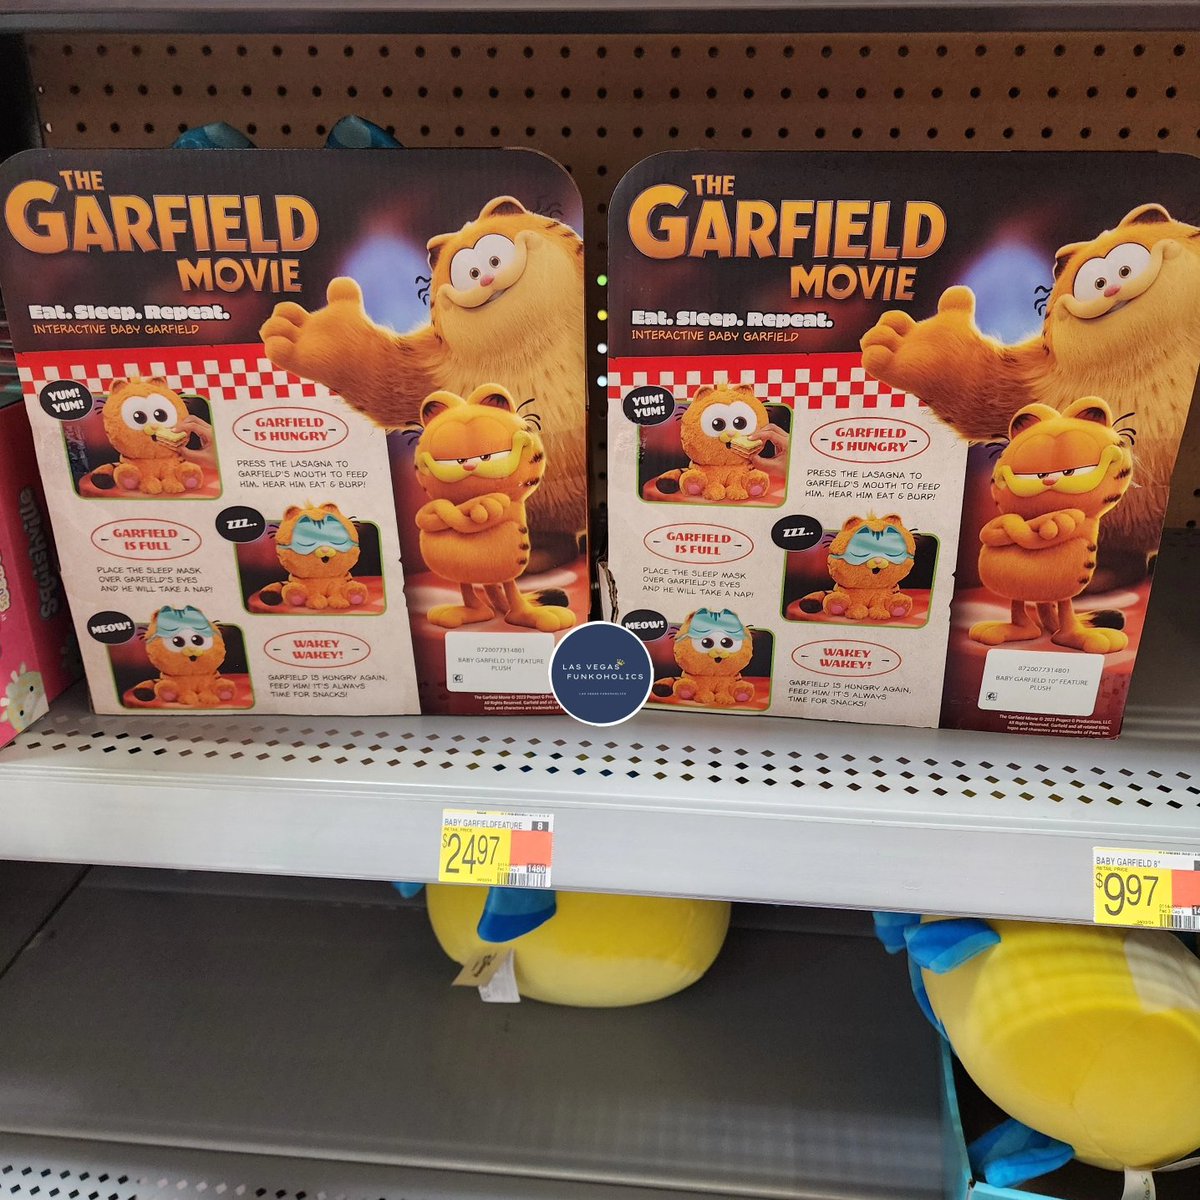 Spotted at Walmart @GoliathGamesUS  The Garfield Movie  At Sleep Repeat Plush. 

#Garfield #Plush #garfieldthemovie #walmartfinds #Walmart #fyp #Vegas  #cats #odie #dogs #toystagram #toysforkids